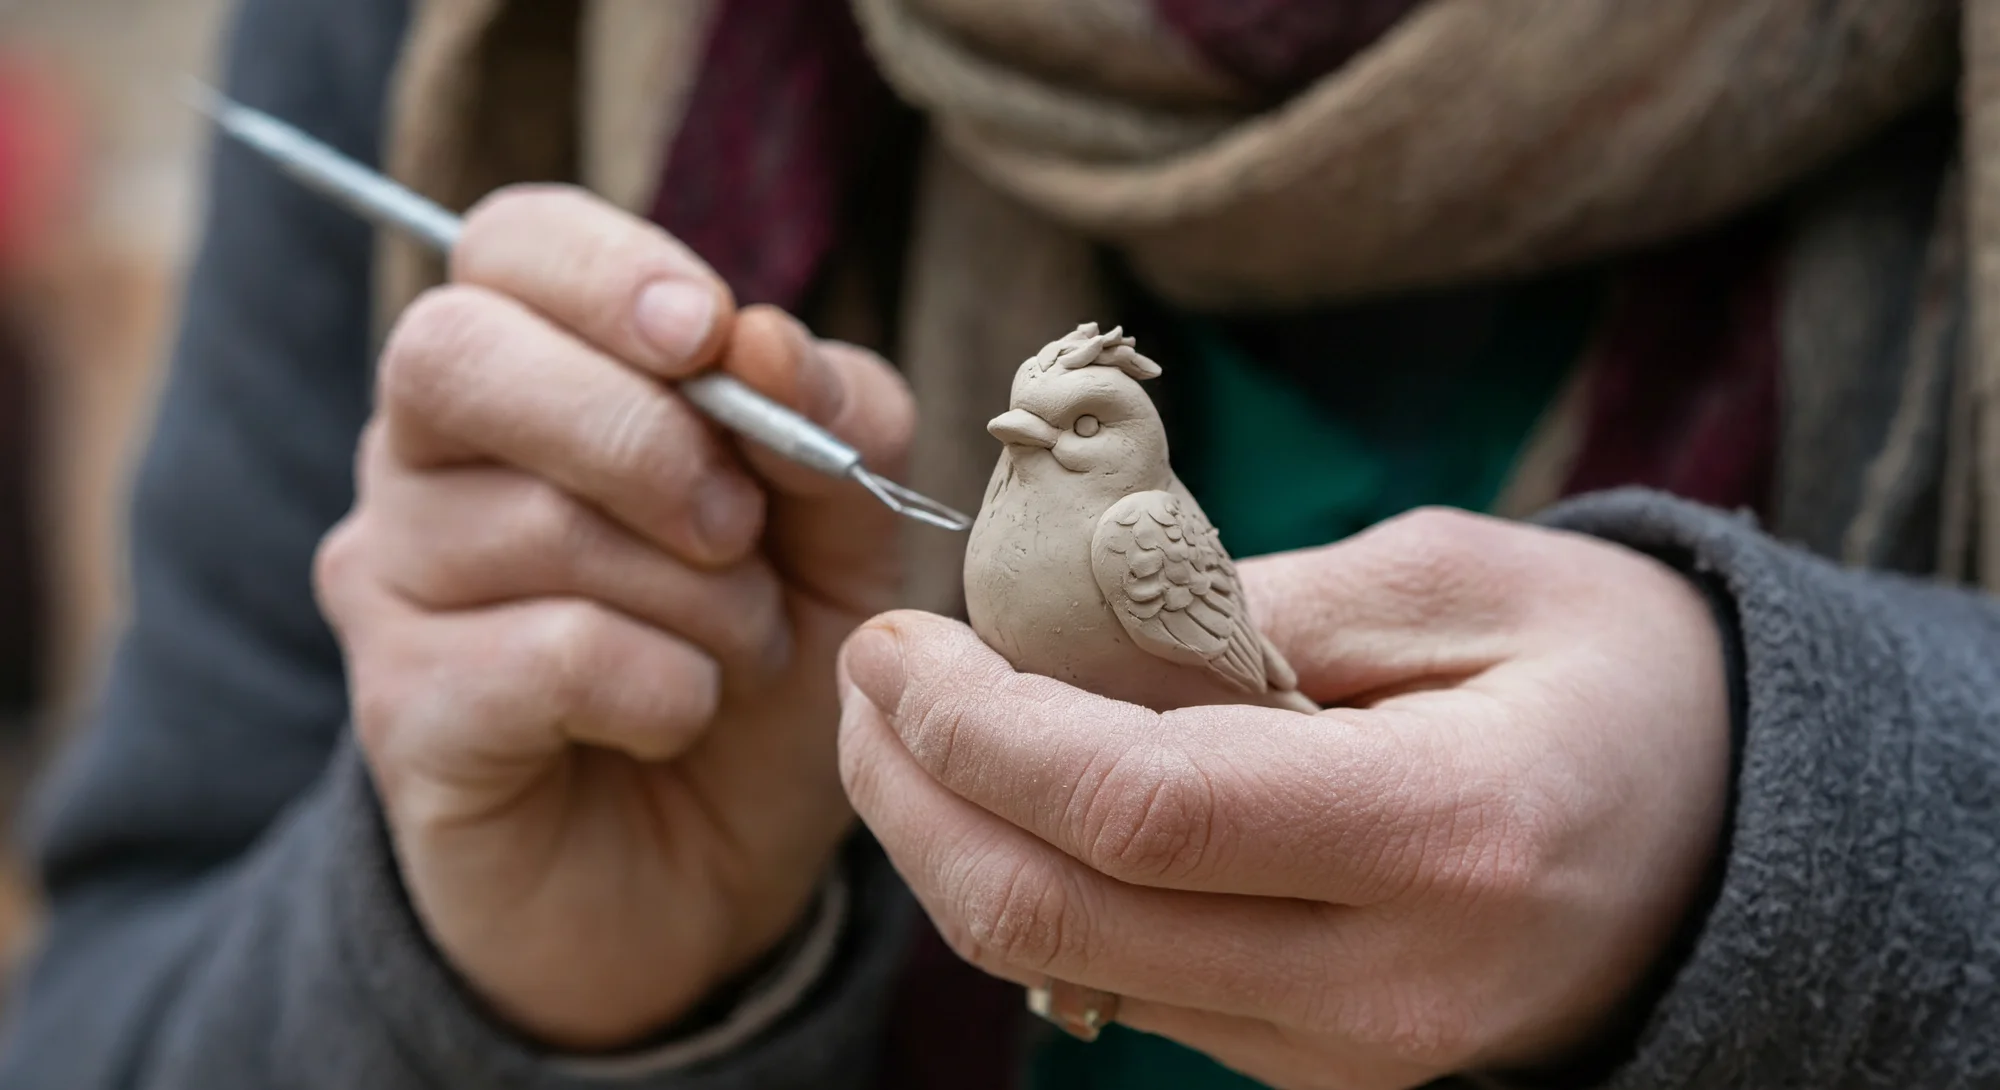 一个人的手持着一个小粘土鸟的雕像，另一只手用雕刻工具雕刻。手上沾满了粘土灰尘。雕刻者穿着灰色的羊毛夹克和棕色与酒红色的围巾。